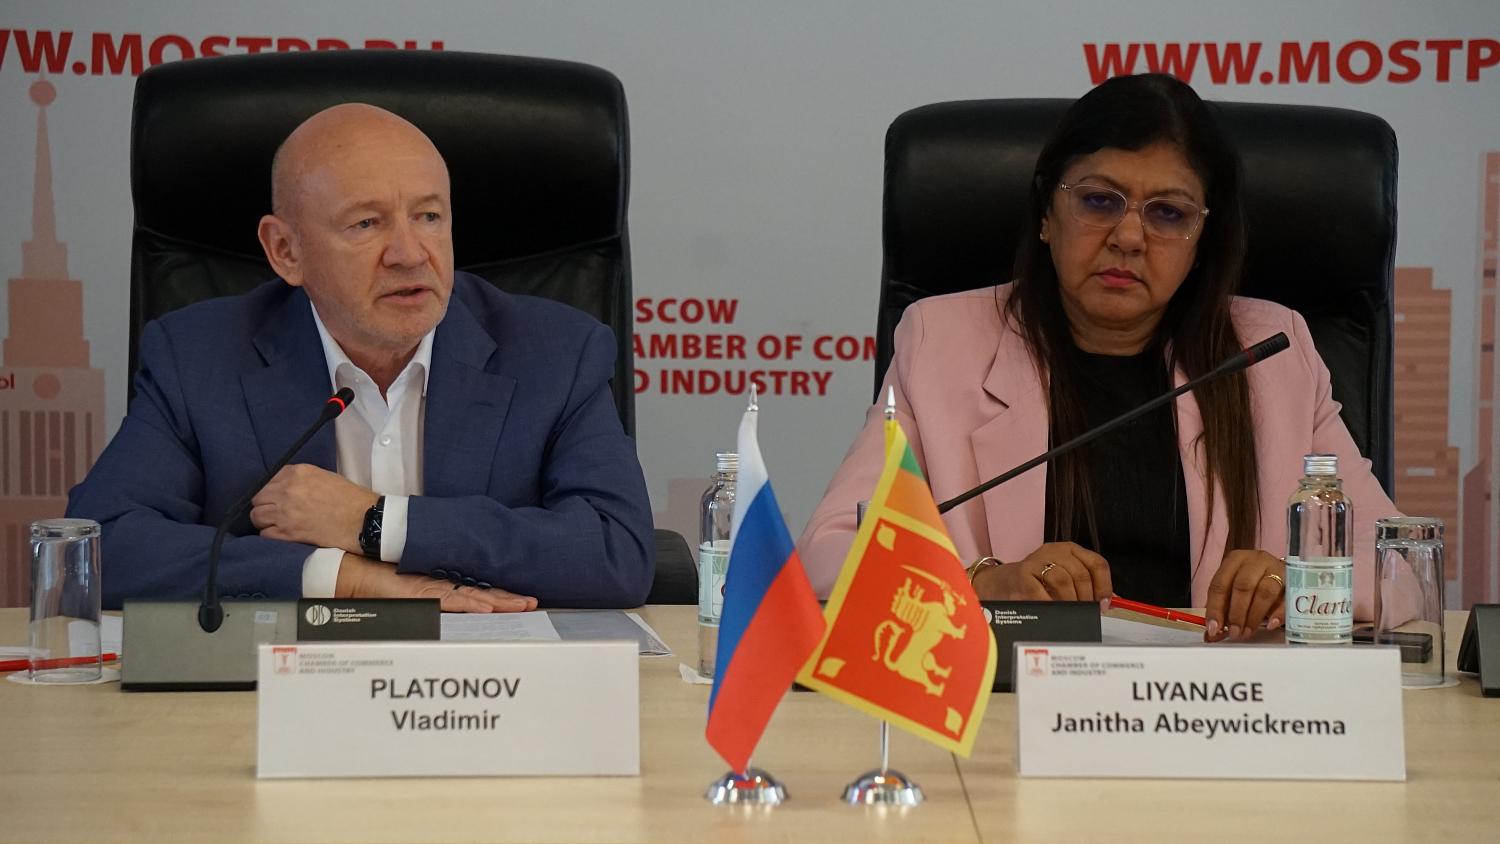 Предприниматели Москвы и Шри-Ланки выразили интерес к сотрудничеству